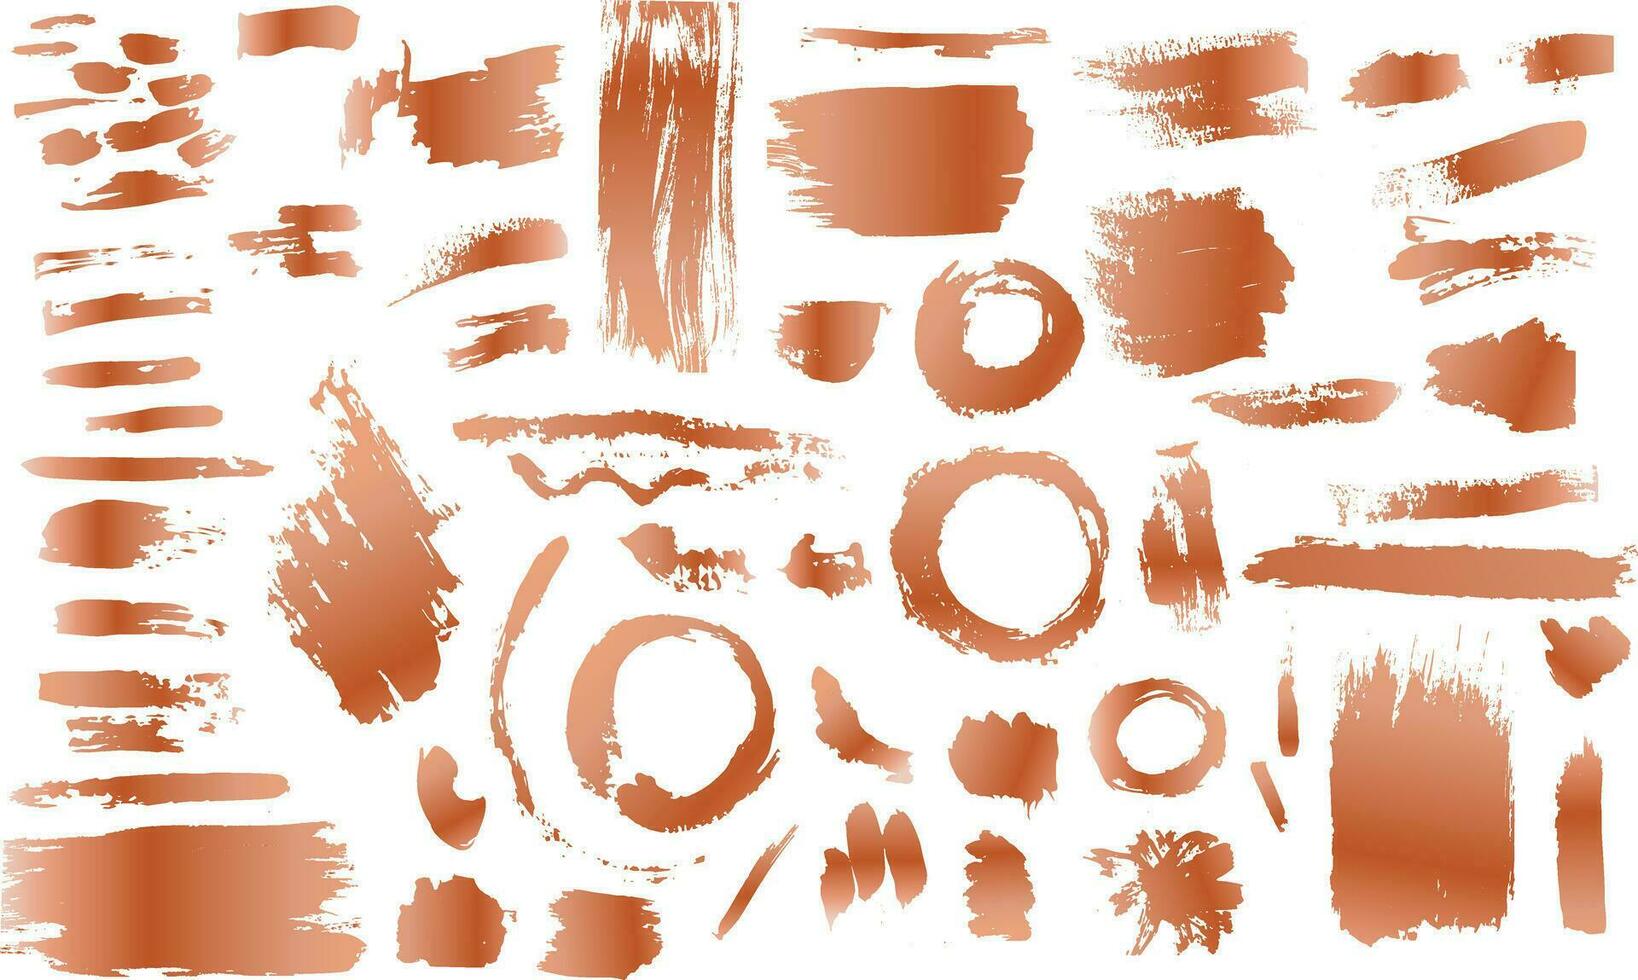 een reeks van grunge koper, roos goud artistiek borstel beroertes Kenmerken spons postzegels, spatten, droog borstel merken, en pastel potlood texturen vector